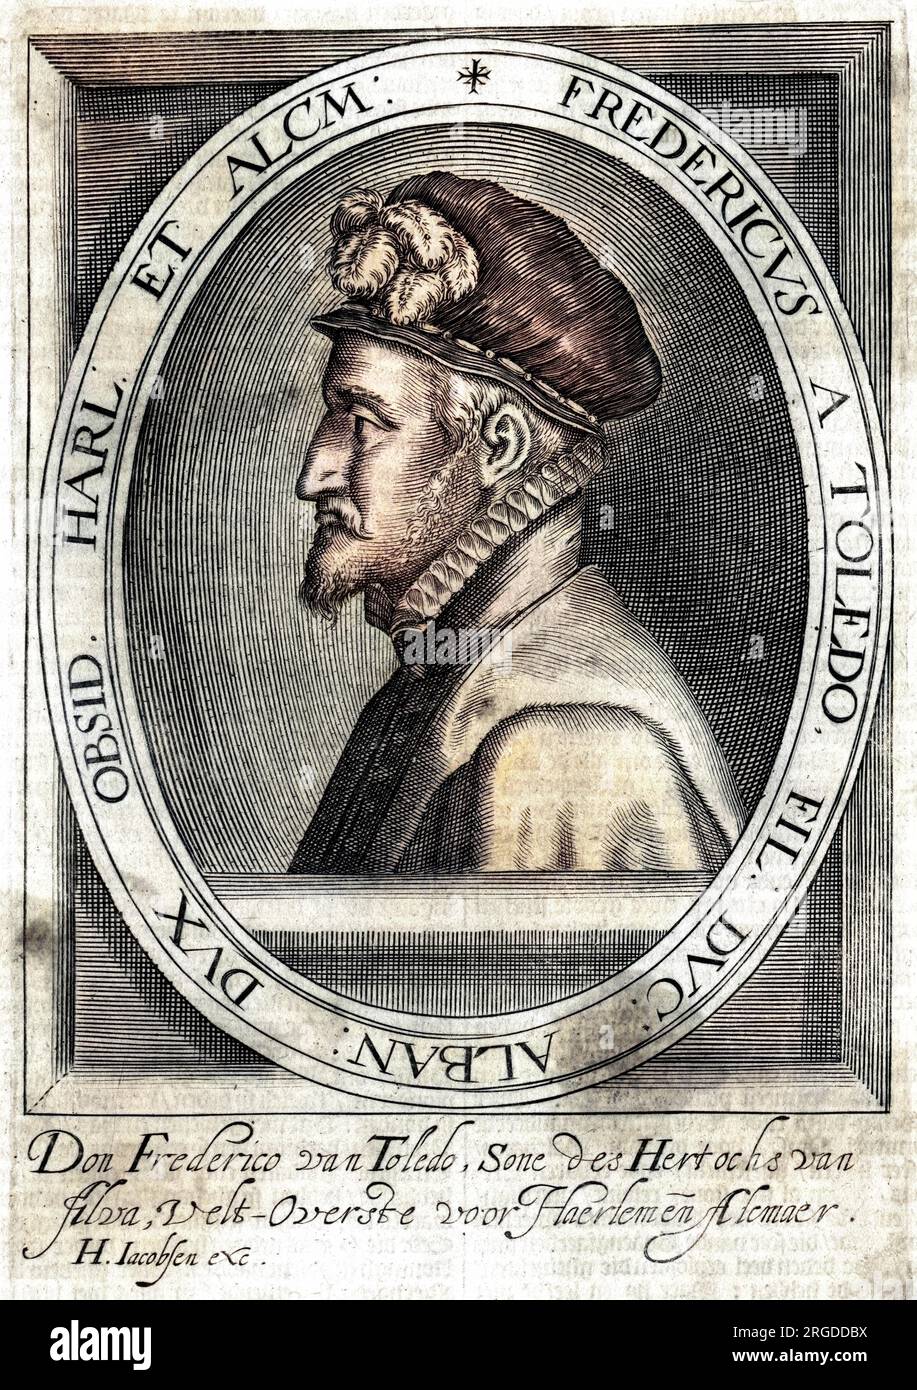 FEDERICO DE TOLEDO commandant militaire espagnol aux pays-Bas, fils du duc d'Alva : gouverneur de Naples en 1568, assiégea plus tard Haarlem. Banque D'Images